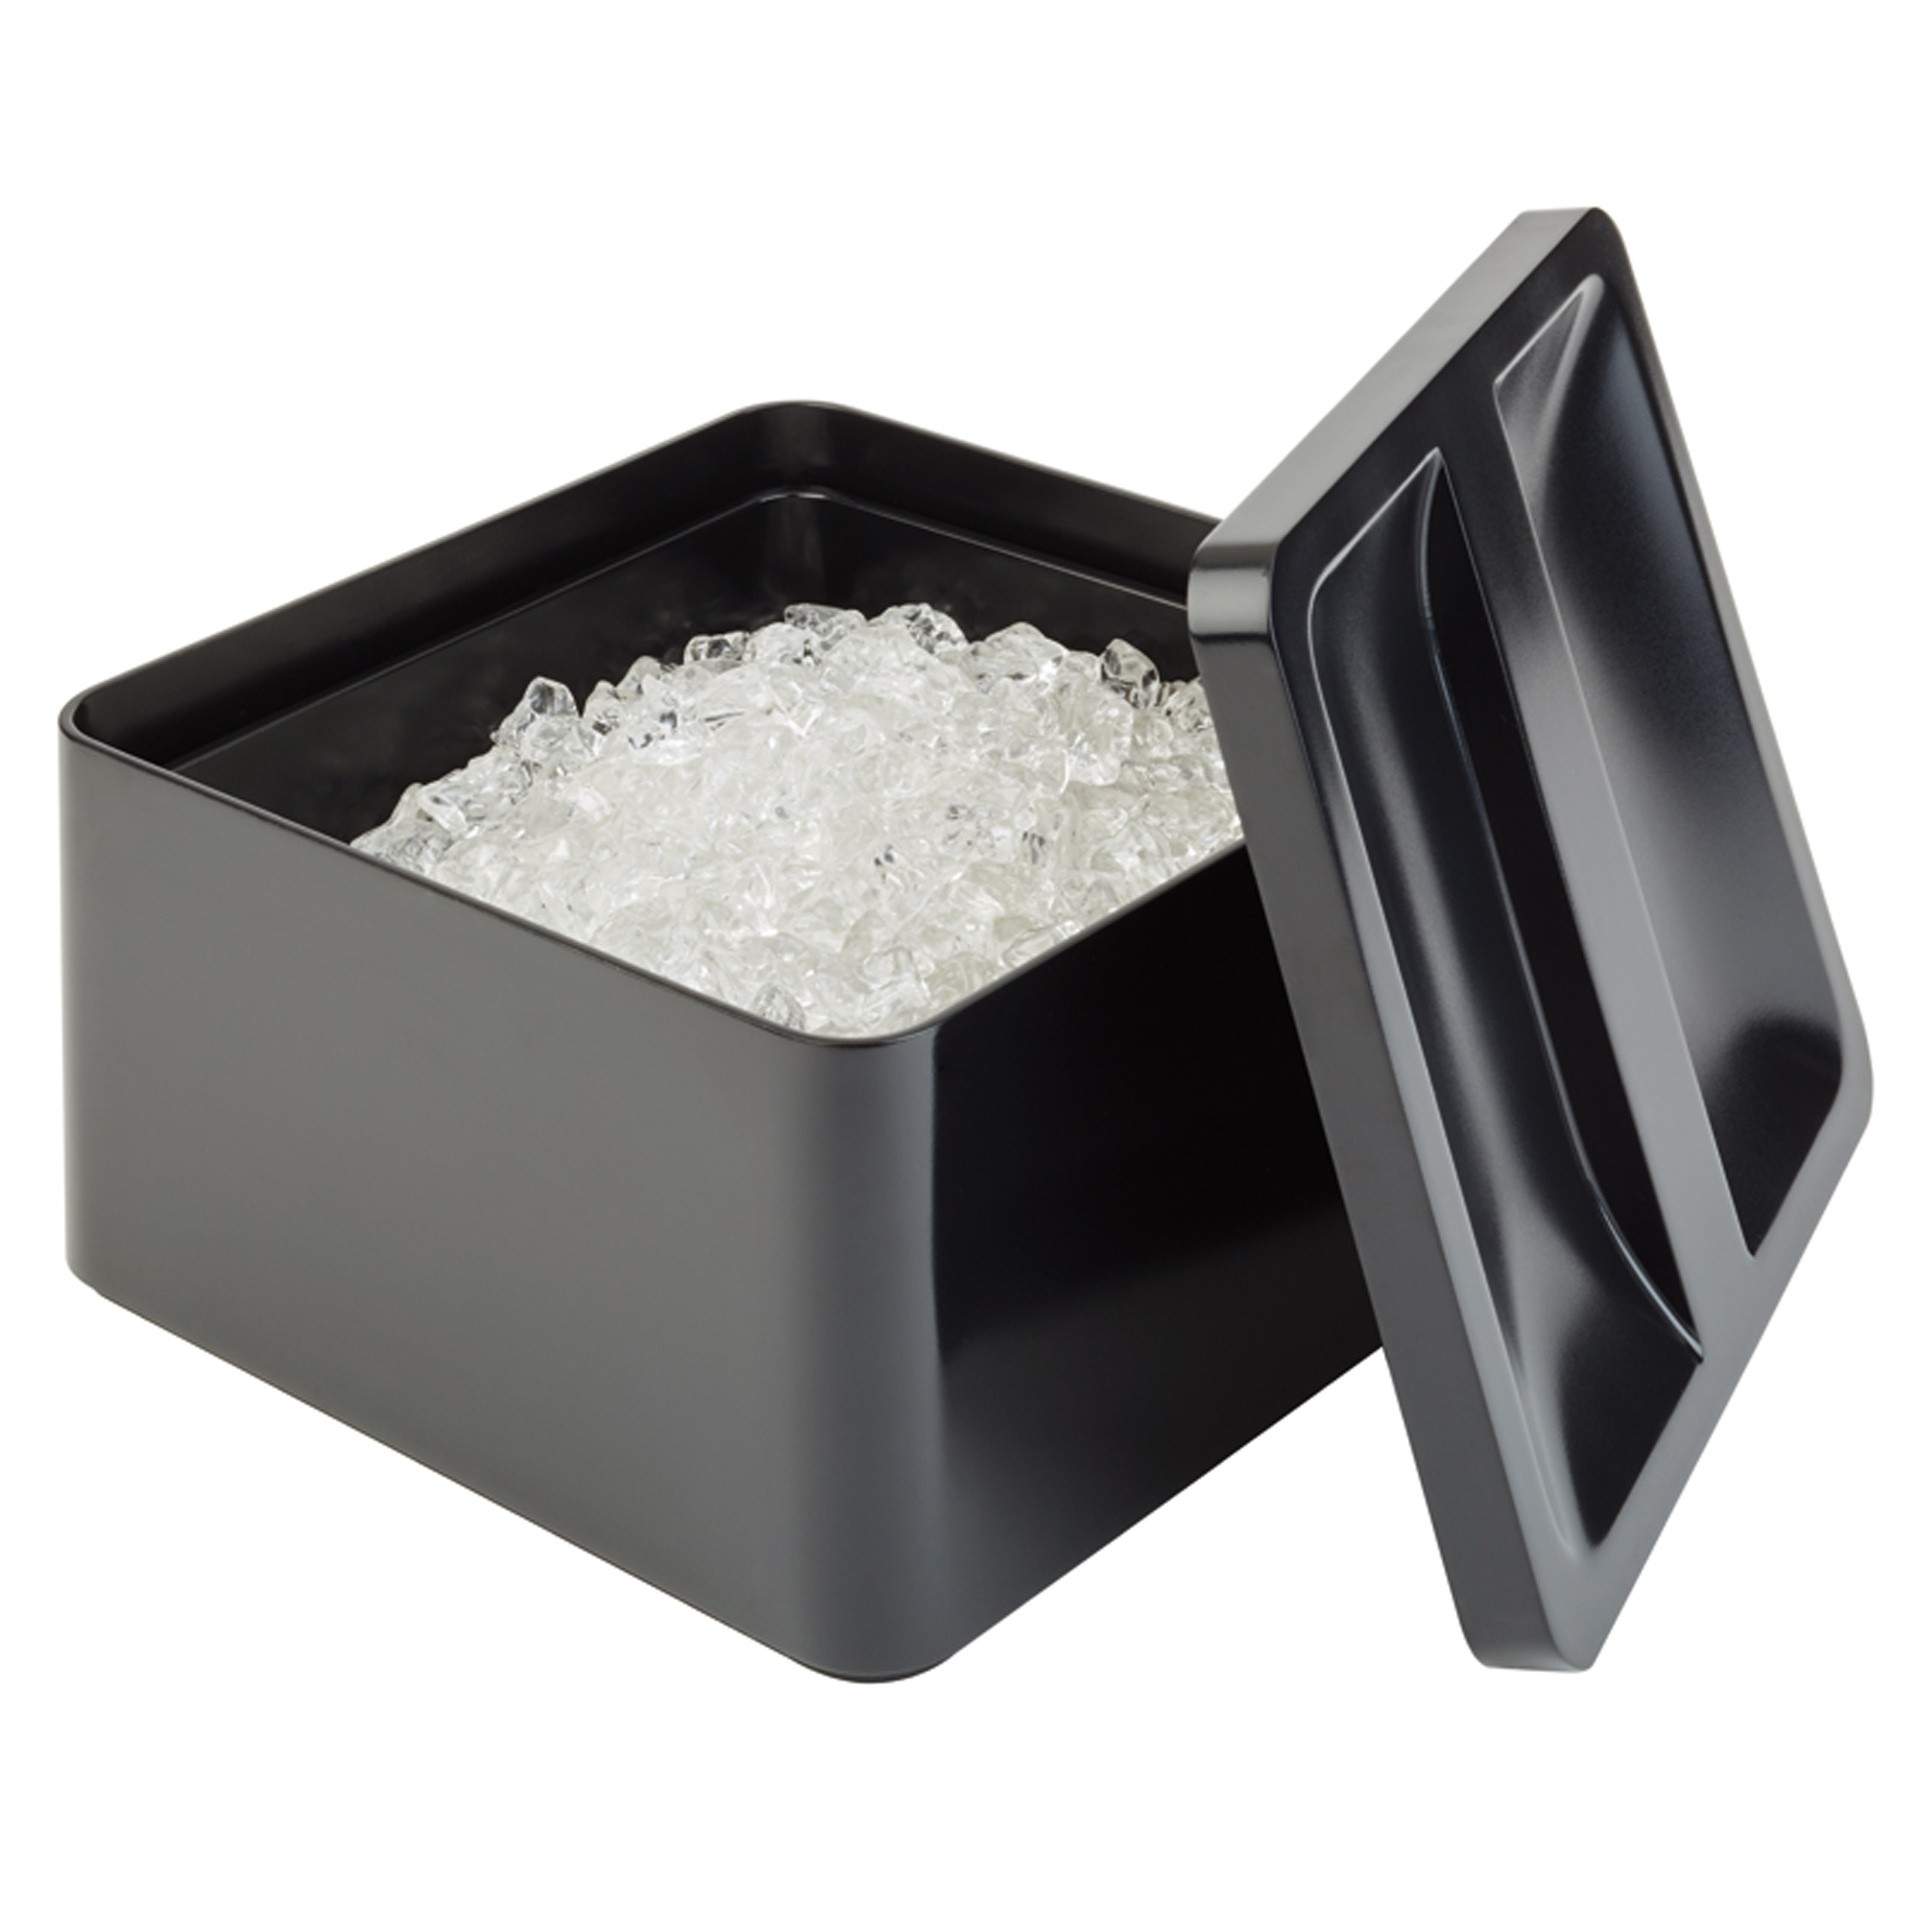 Eisbox - mit Tropfeinsatz - schwarz - quadratisch - Abm. 27 x 27 x 15 cm - Inhalt 5,4 l - SAN - 93220-B